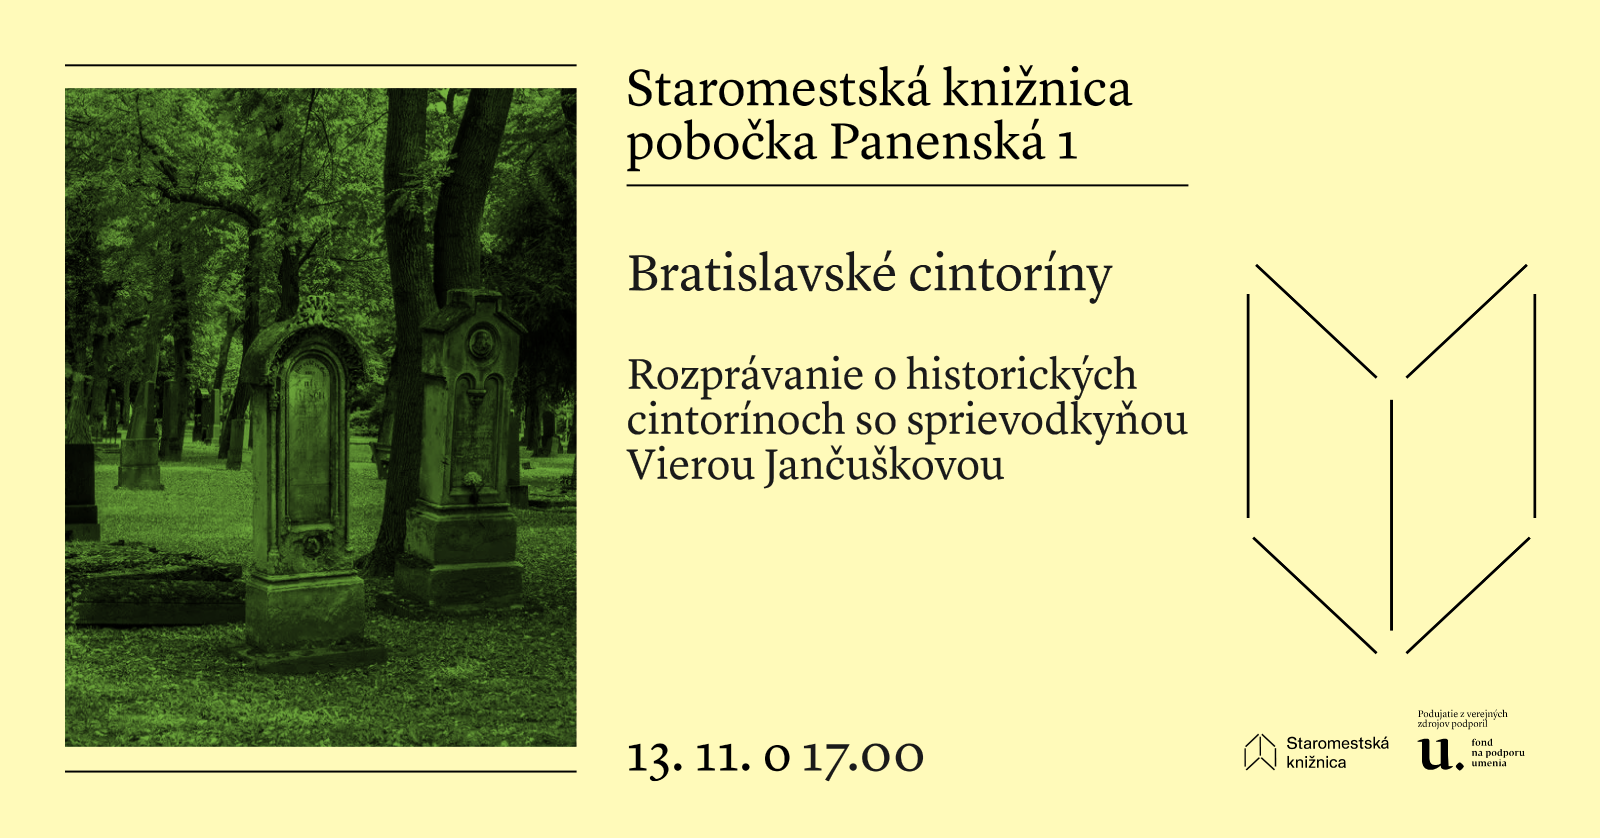 Bratislavské cintoríny s Vierou Jančuškovou 13. novembra o 17.00 v Staromestskej knižnici na Panenskej 1